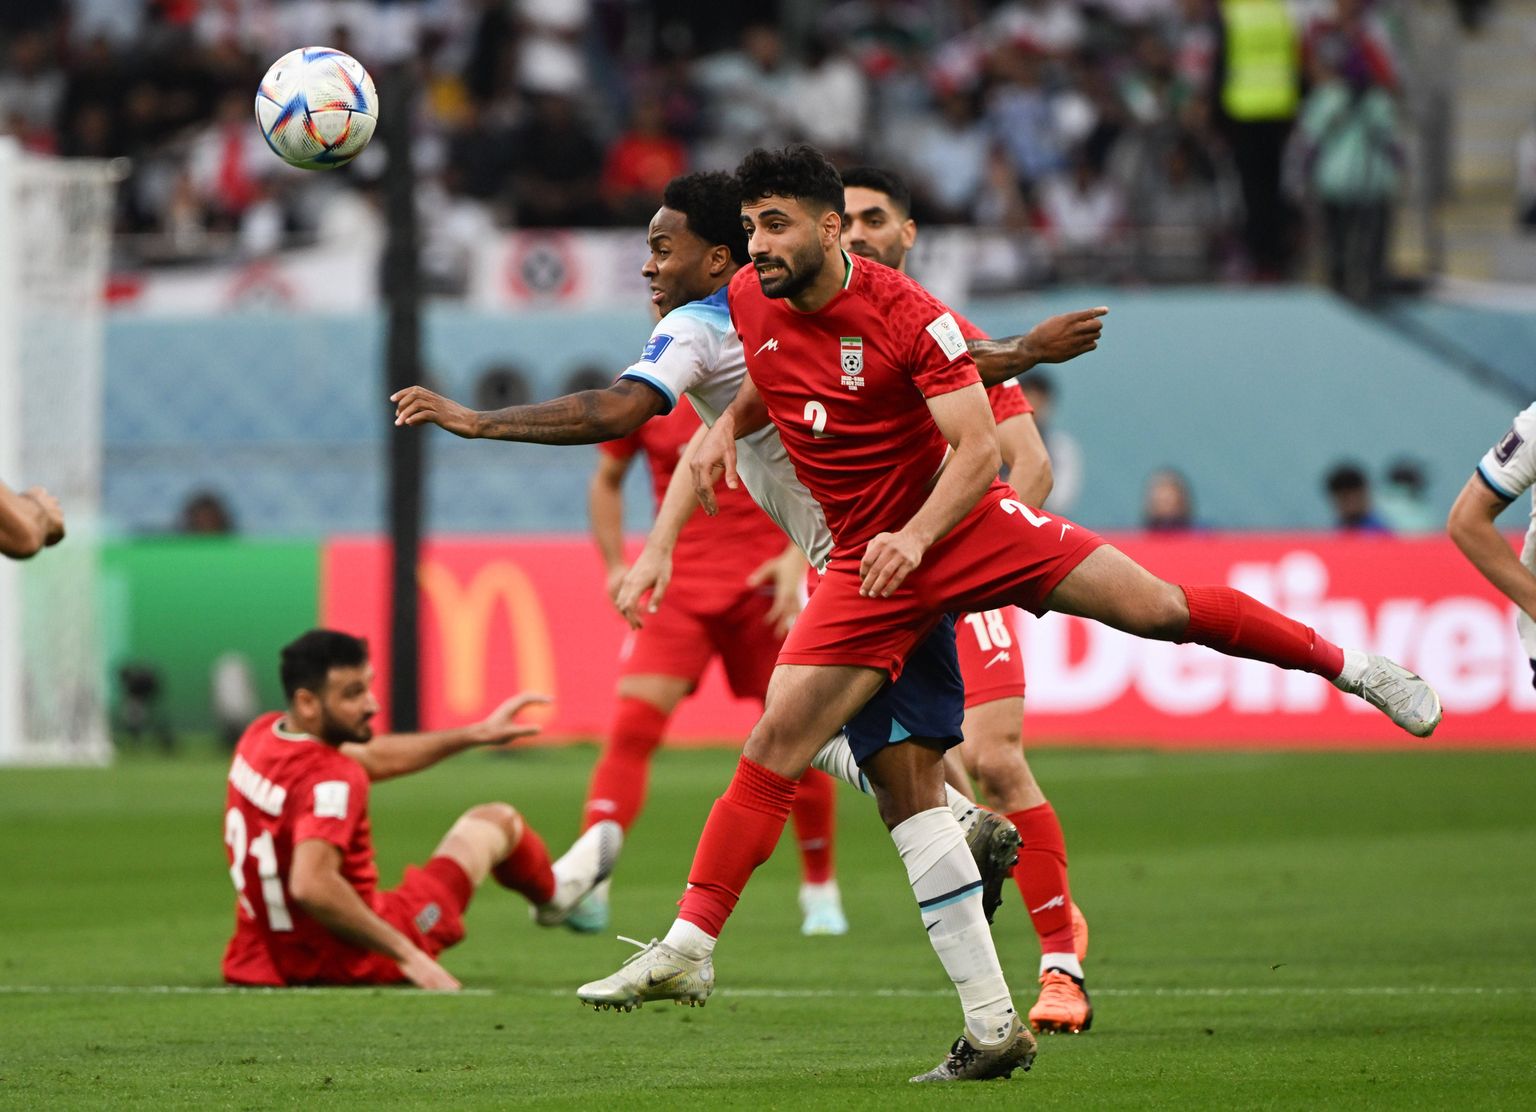 Iraani pallurid (punases) avamängus Inglismaaga.